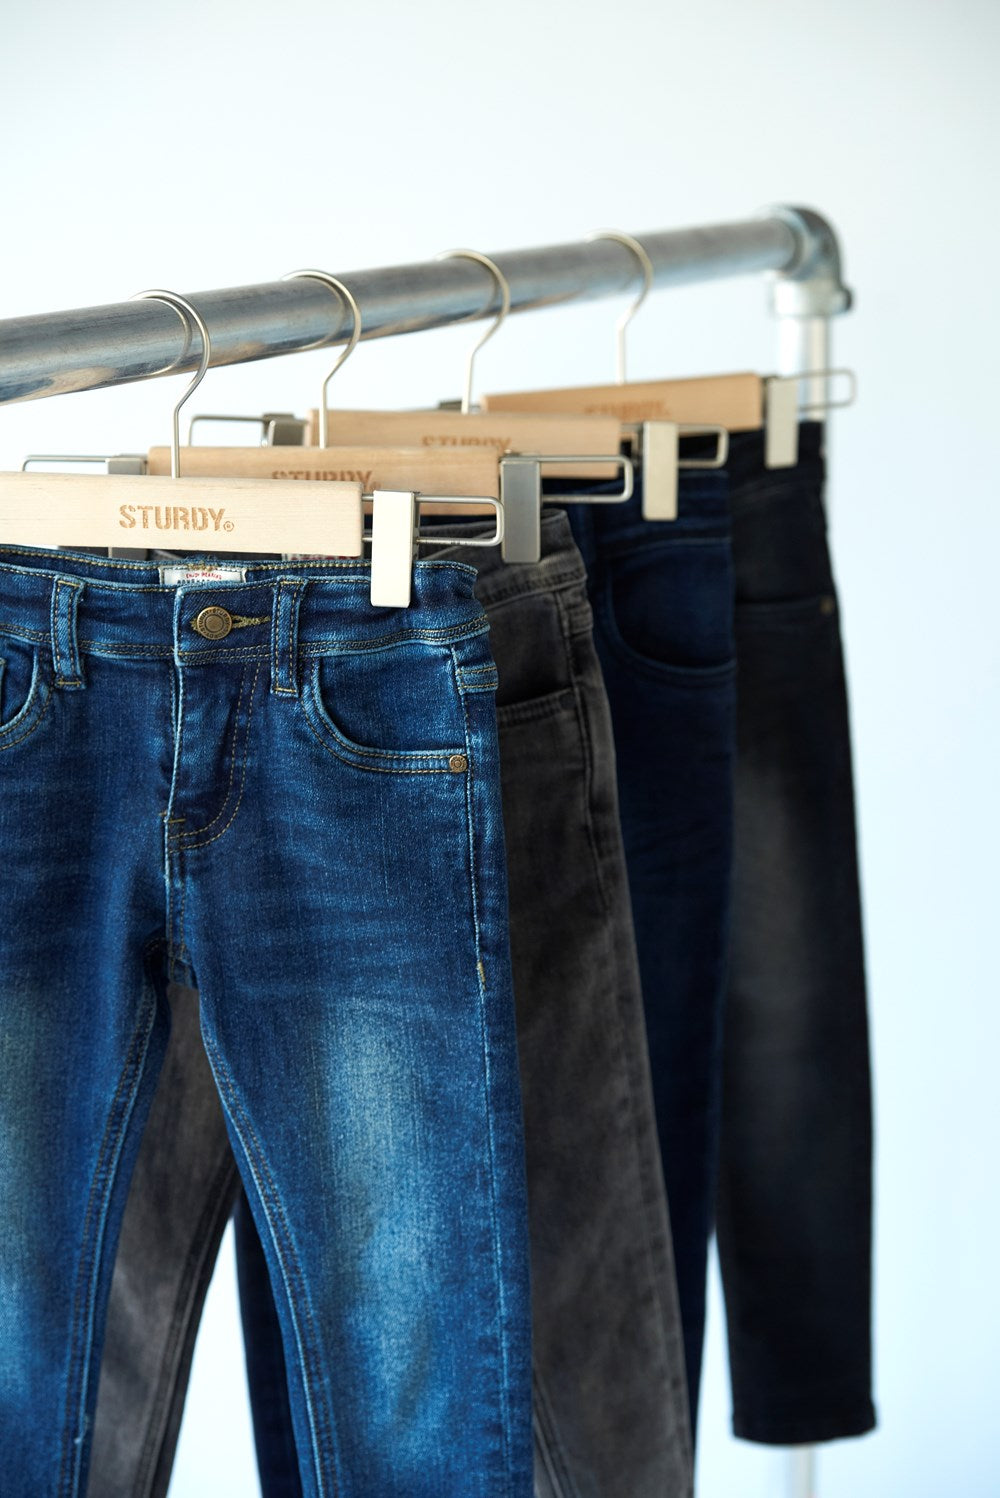 Sturdy Slim fit jeans - Sturdy Denim